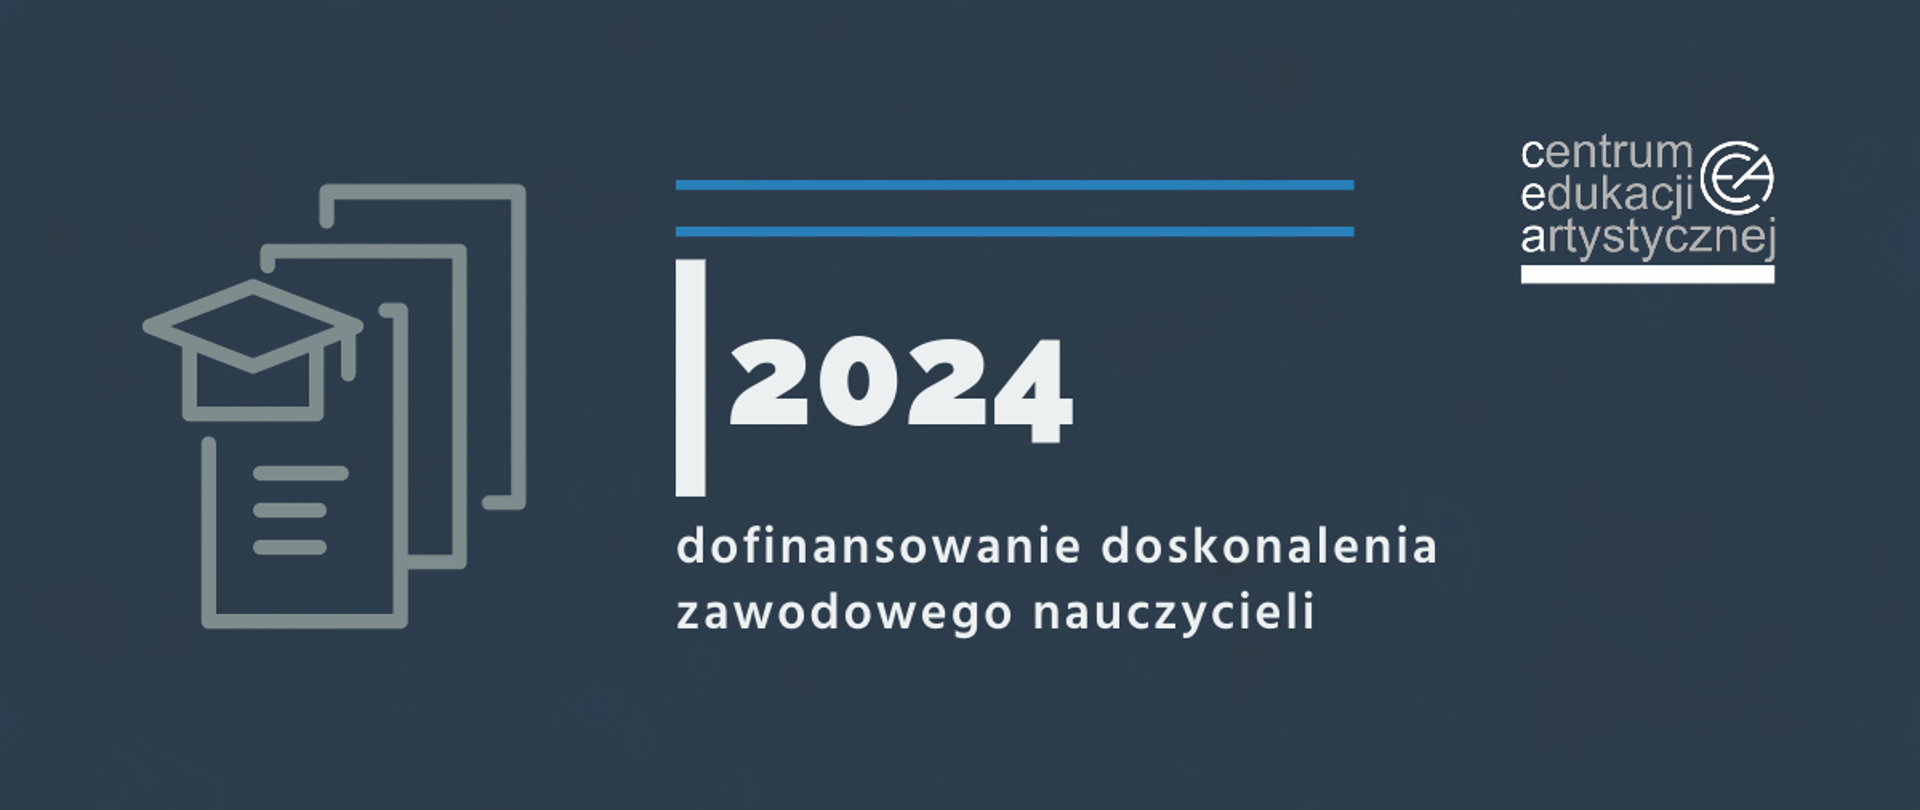 Grafika na niebieskoszarym tle z logo CEA w prawym górnym rogu, ikonografią czapki nauczycielskiej i dokumentów po lewej stronie oraz tekstem "2024 dofinansowanie doskonalenia zawodowego nauczycieli"